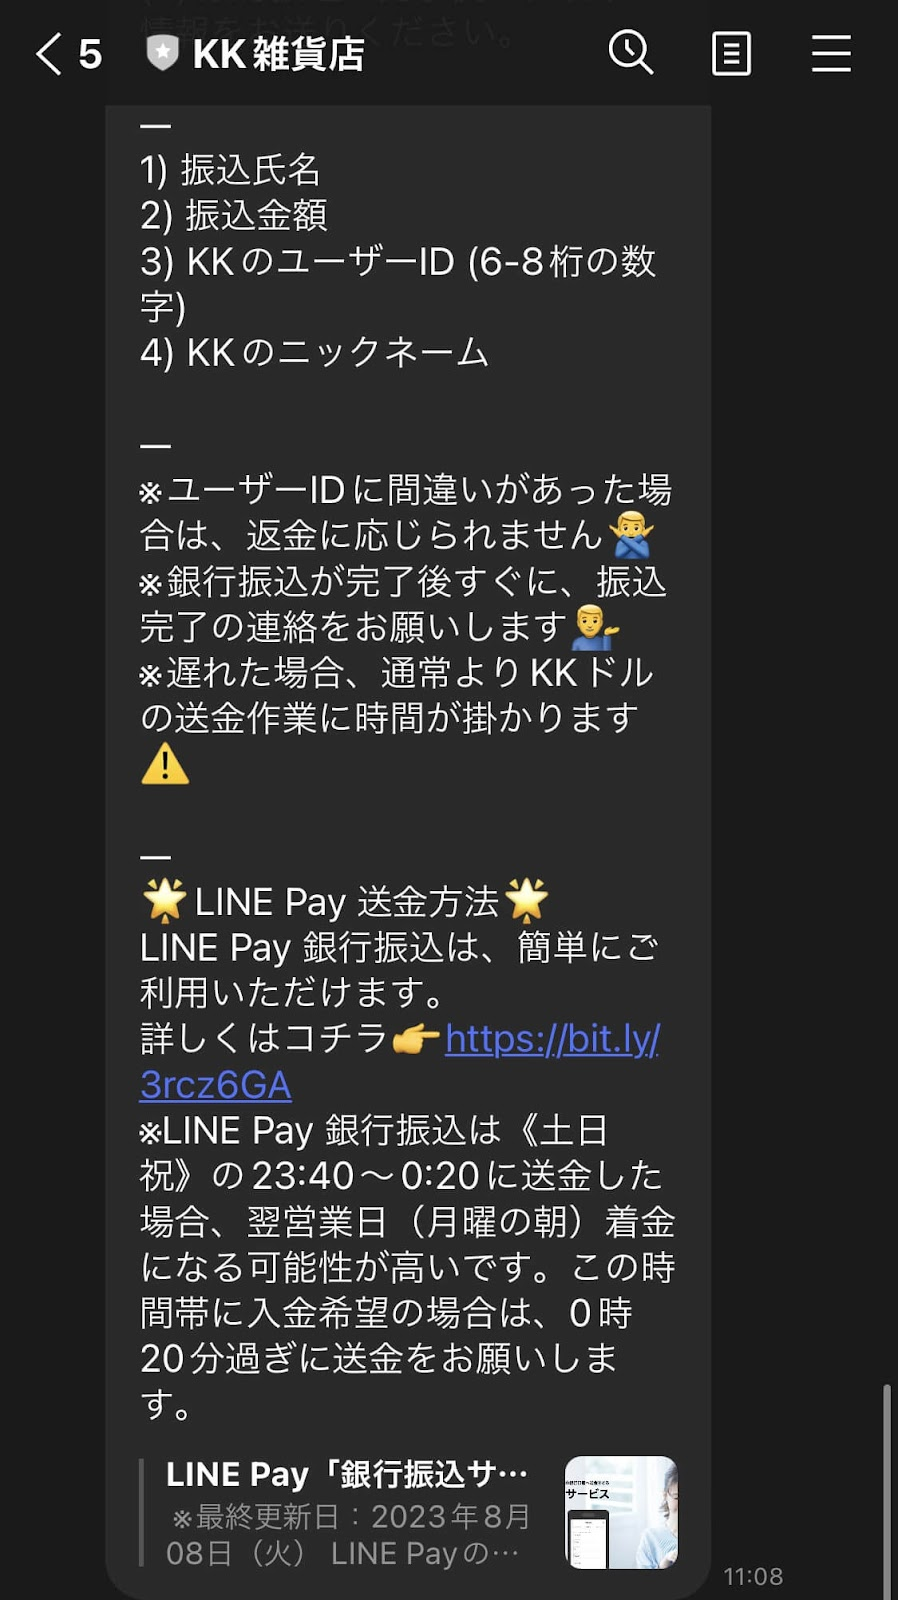 「LINE Payでの送金方法」というリンク